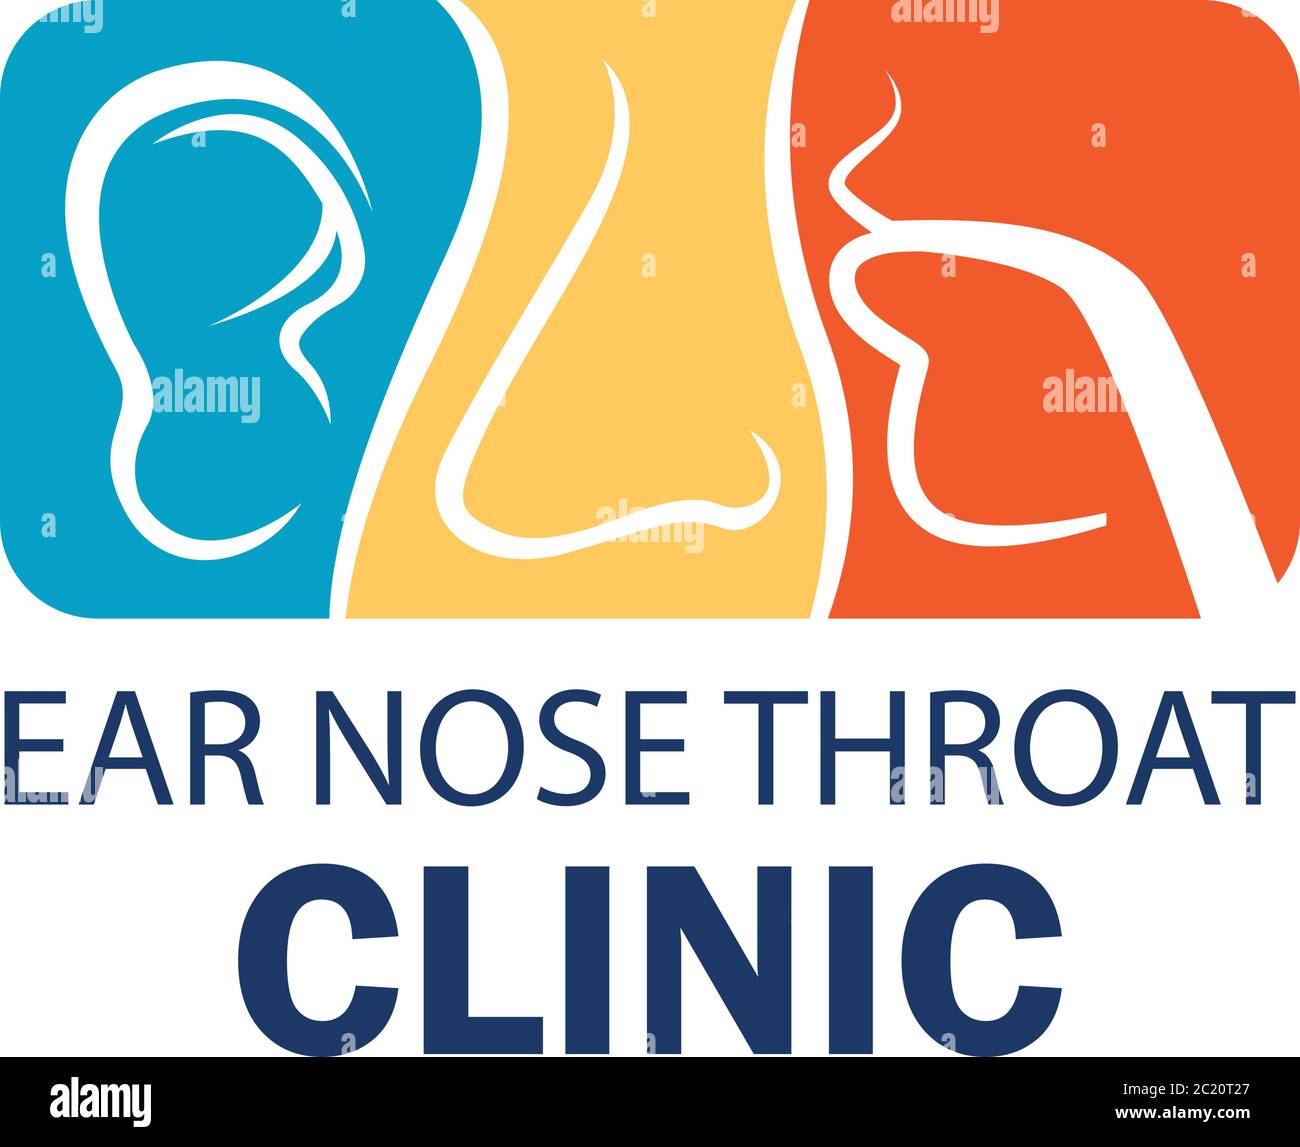 Logo de l'oreille nez gorge (ENT) pour otolaryngologistes concept clinique.  Illustration vectorielle Image Vectorielle Stock - Alamy